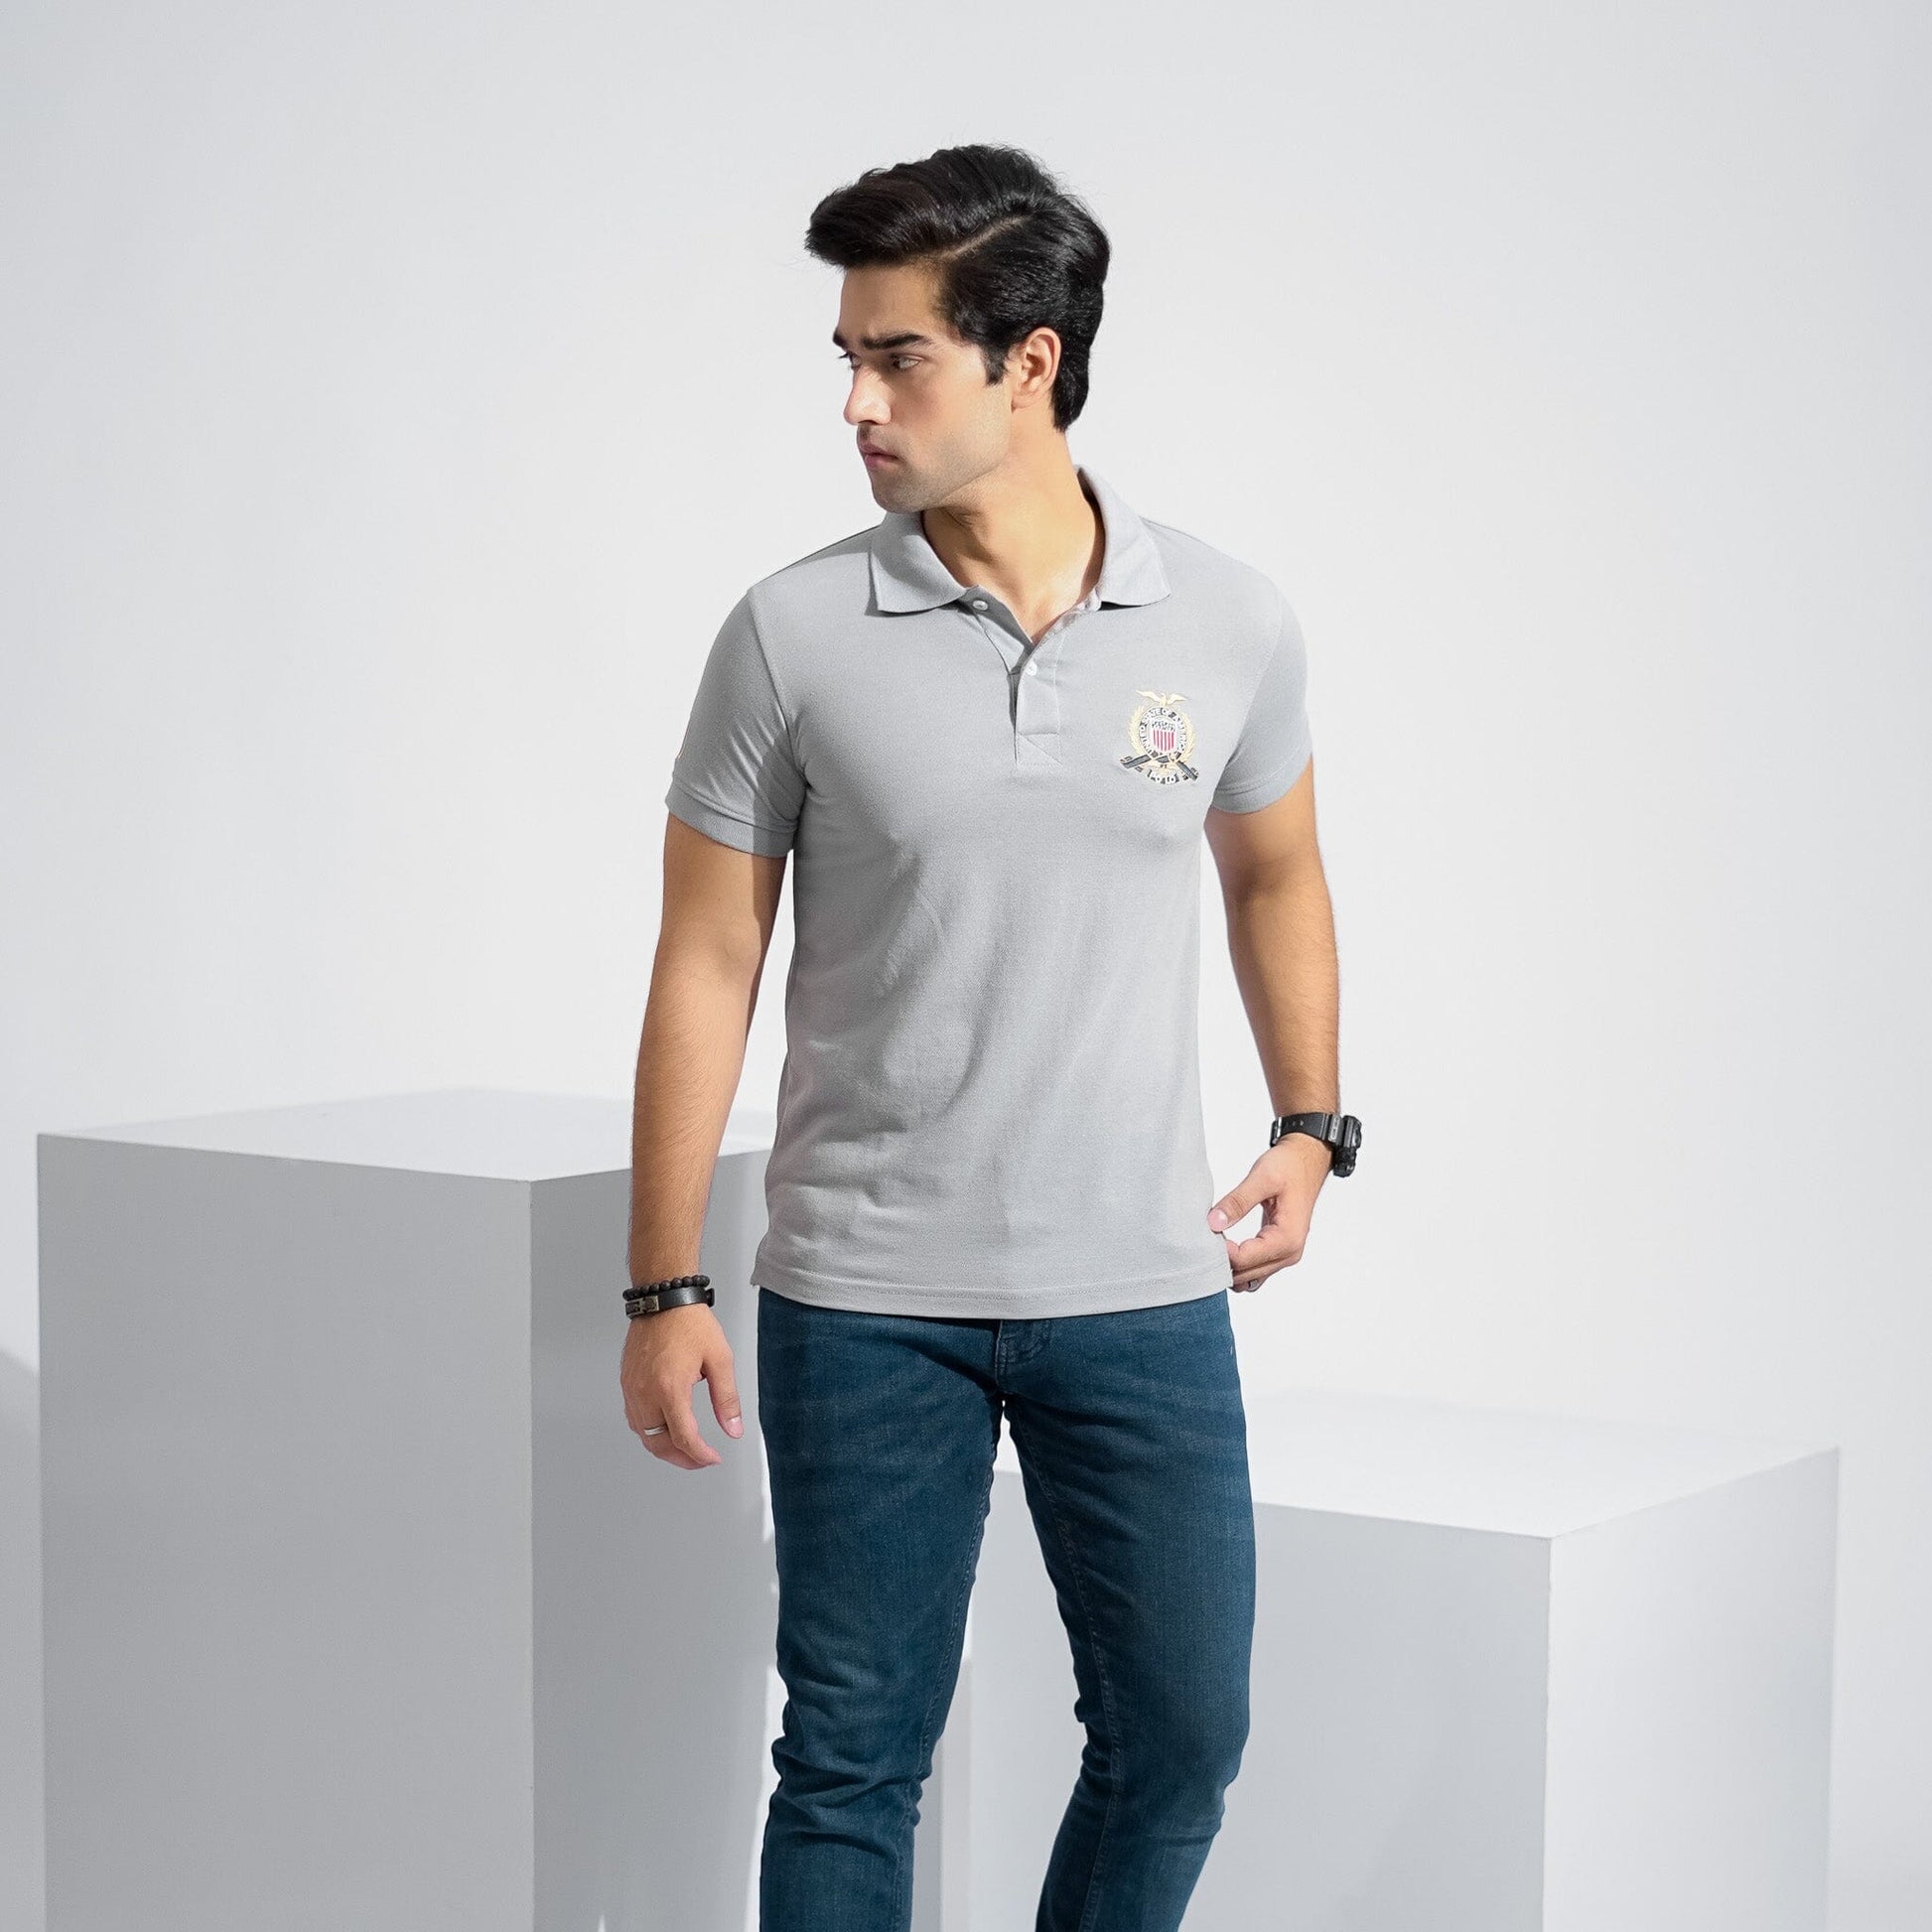 Polo Republica Men's USA Crest & 6 Embroidered Short Sleeve Polo Shirt Men's Polo Shirt Polo Republica 